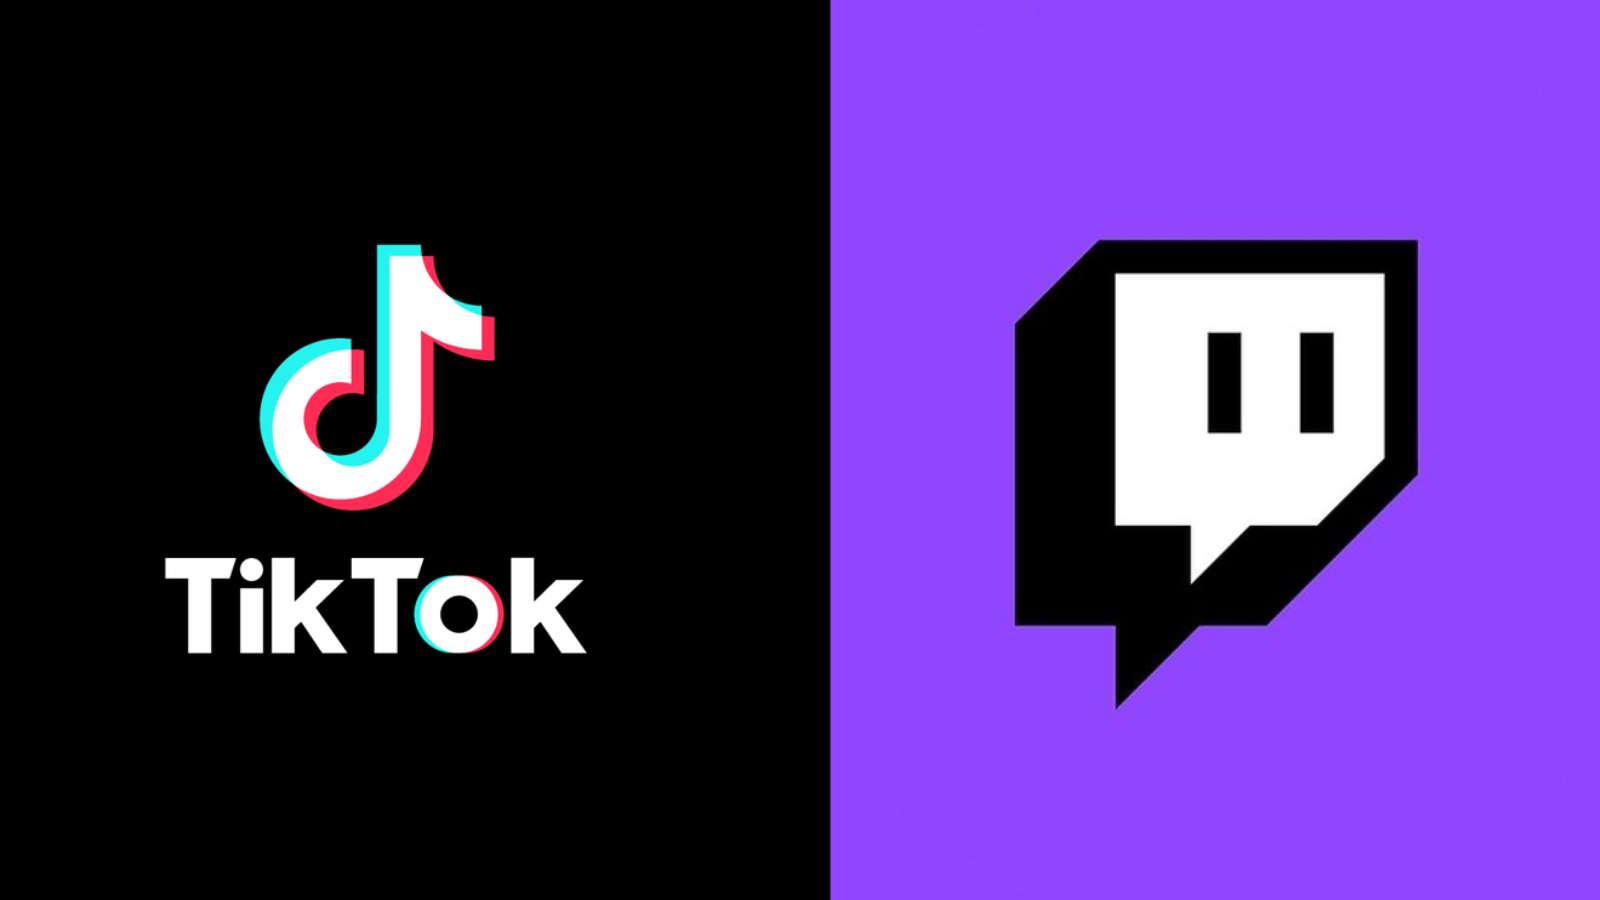 TikTOk and Twitch logos